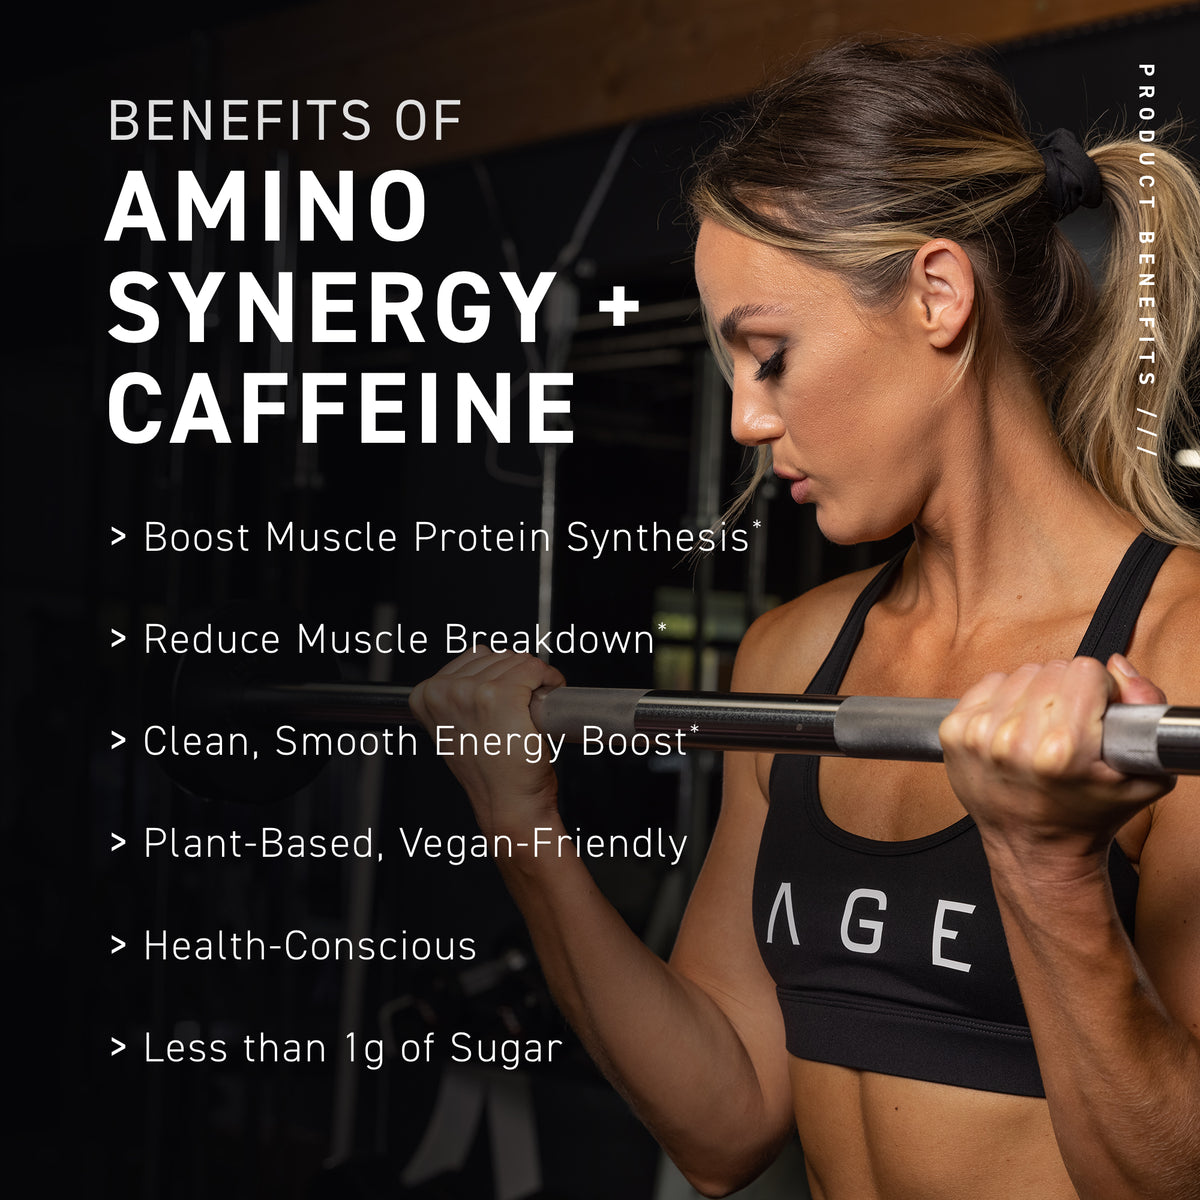 Amino Synergy + Caffeine